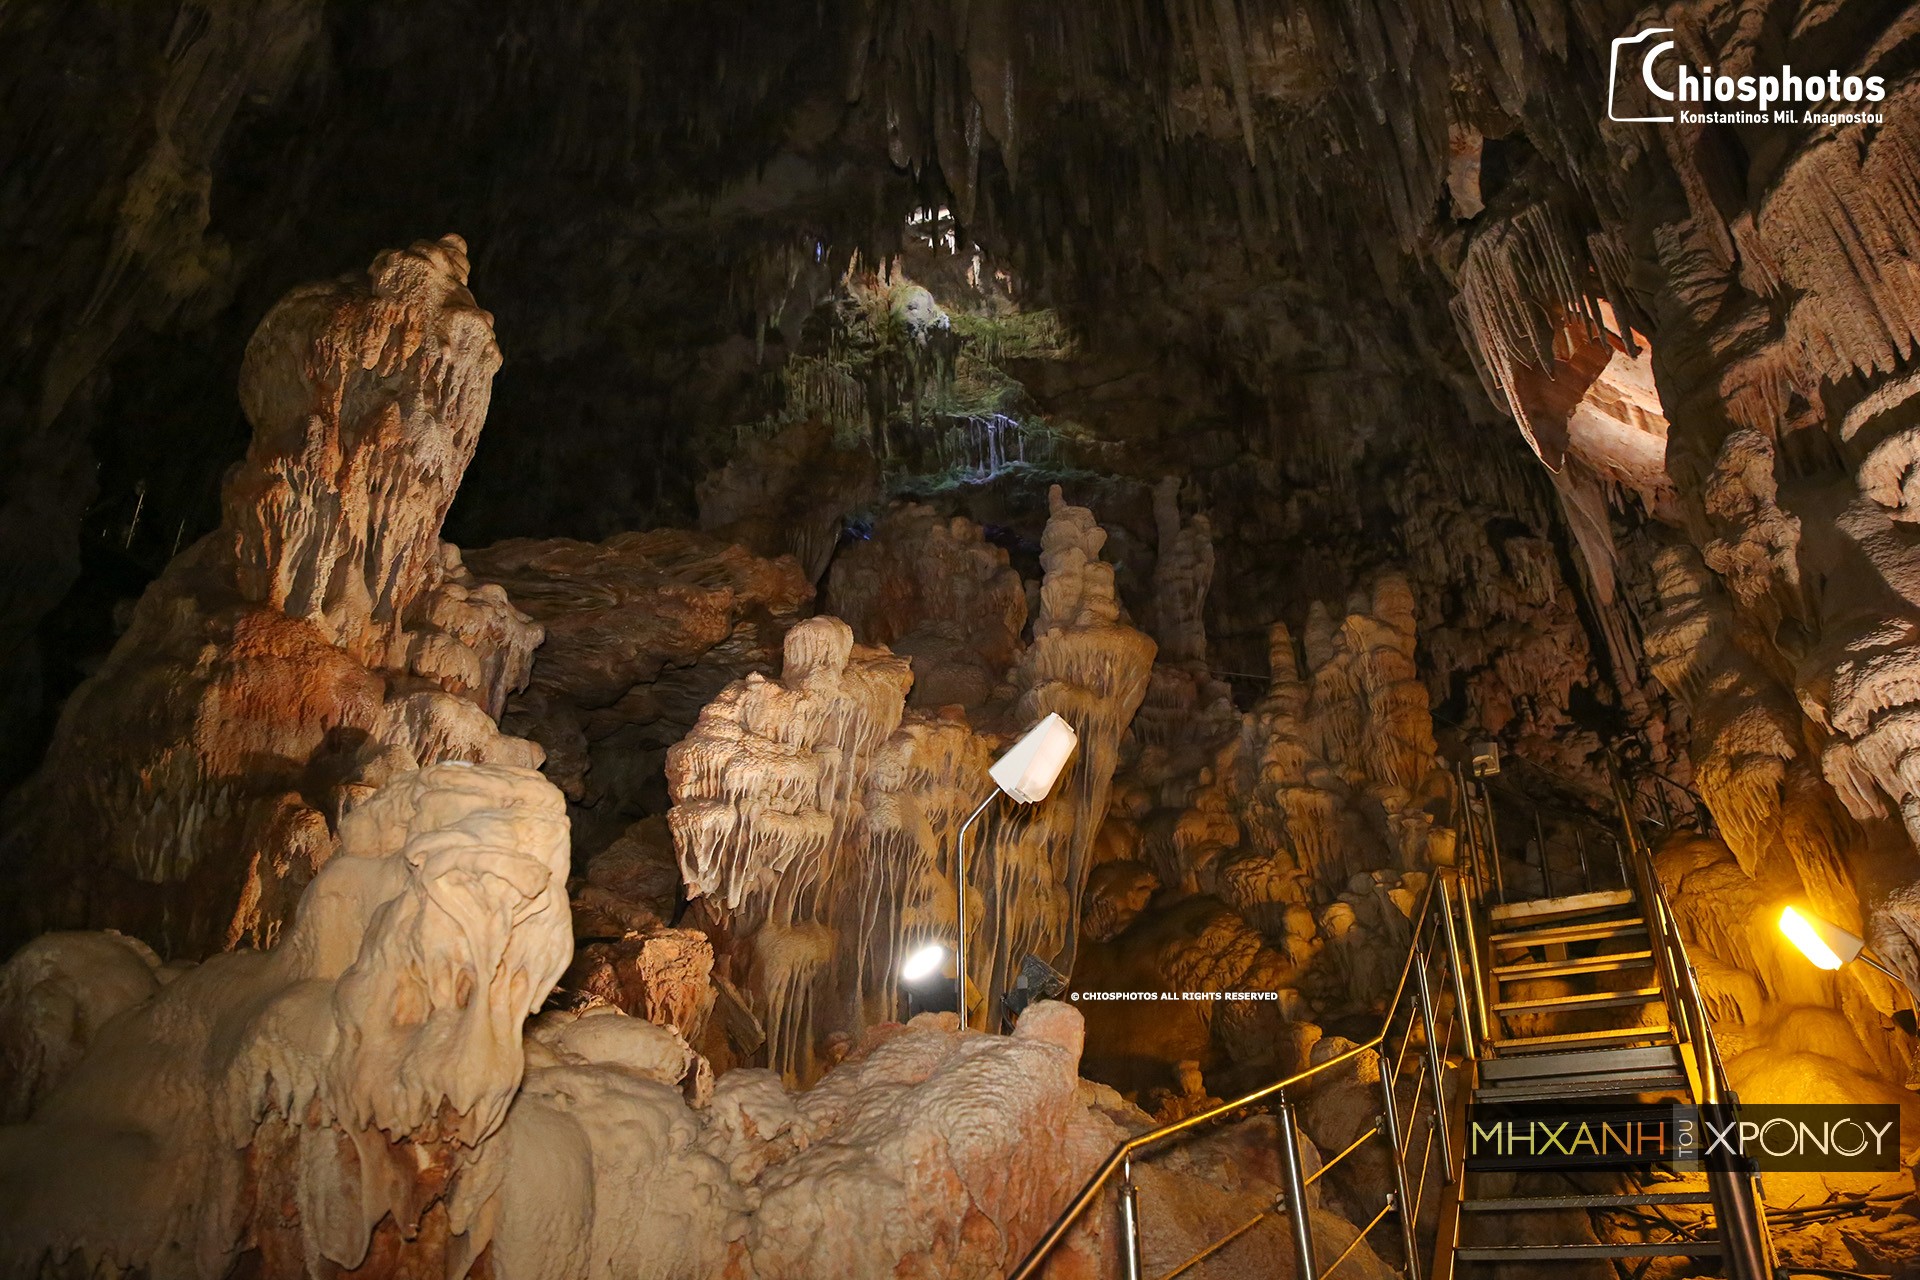 Το σπήλαιο όπου εμφανίζεται το φαινόμενο της «κολώνας φωτός». Πως αποκαλύφθηκε στην Χίο μετά από εκατ. χρόνια σιωπής